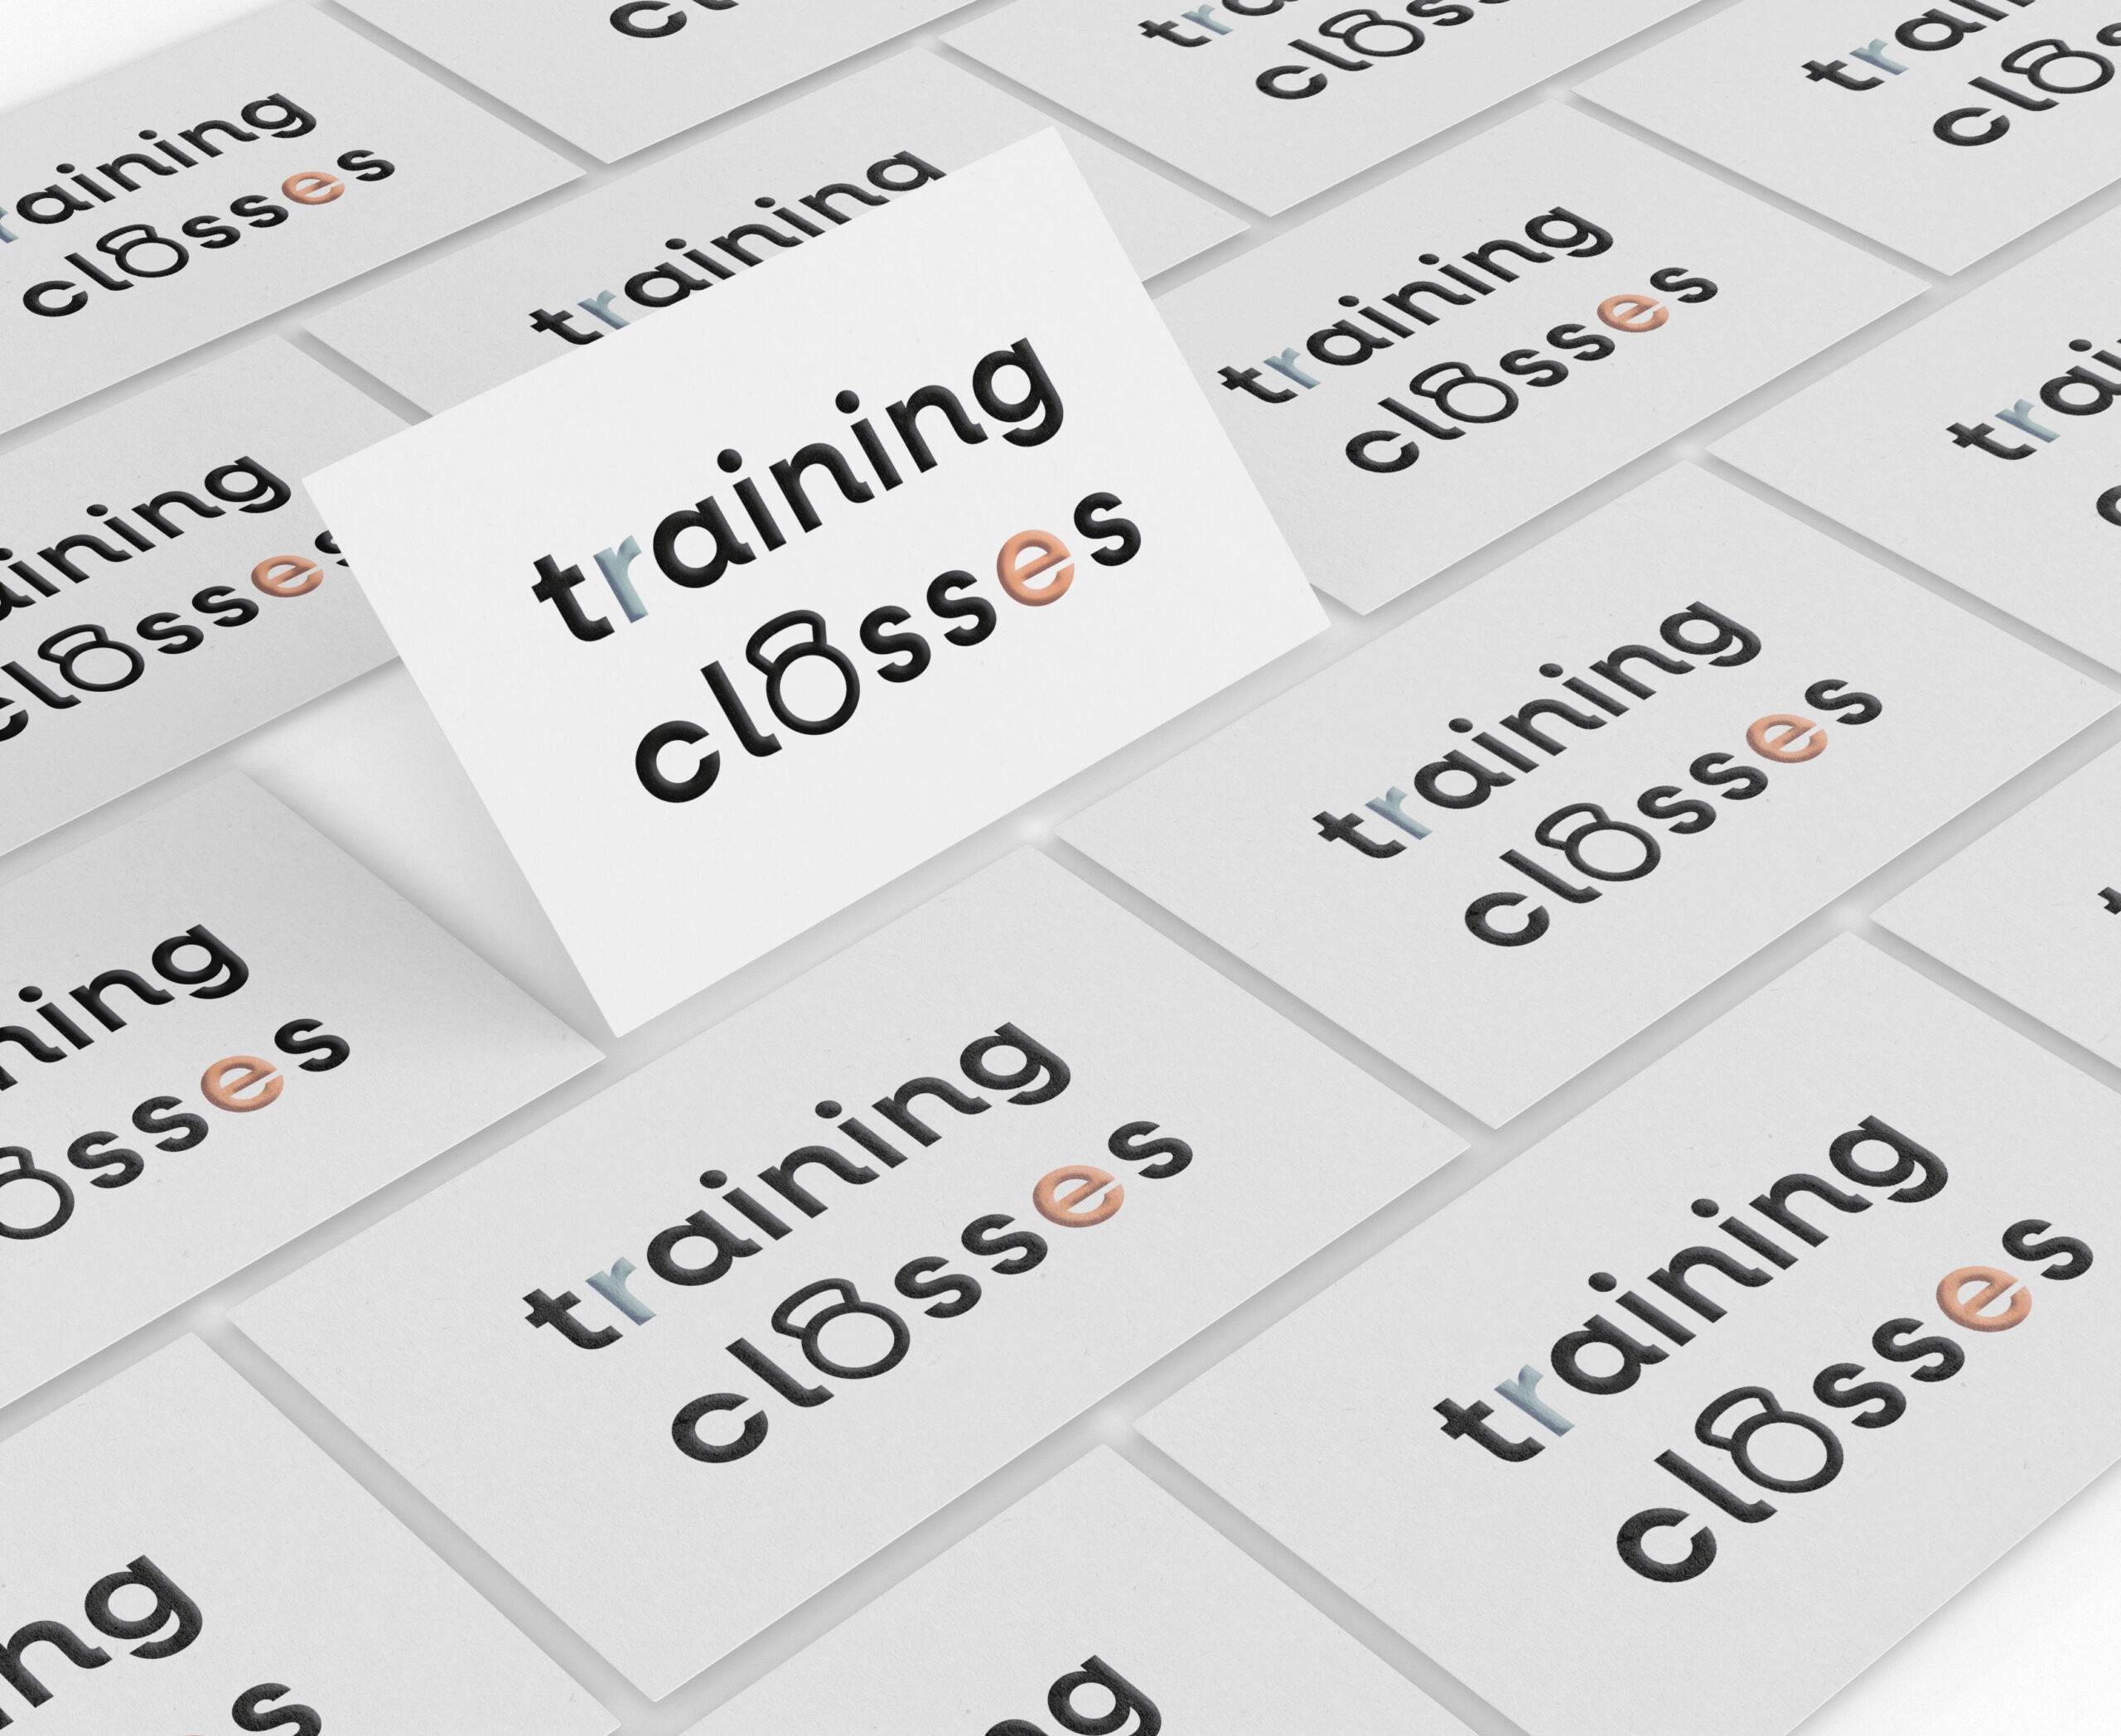 Training Classes